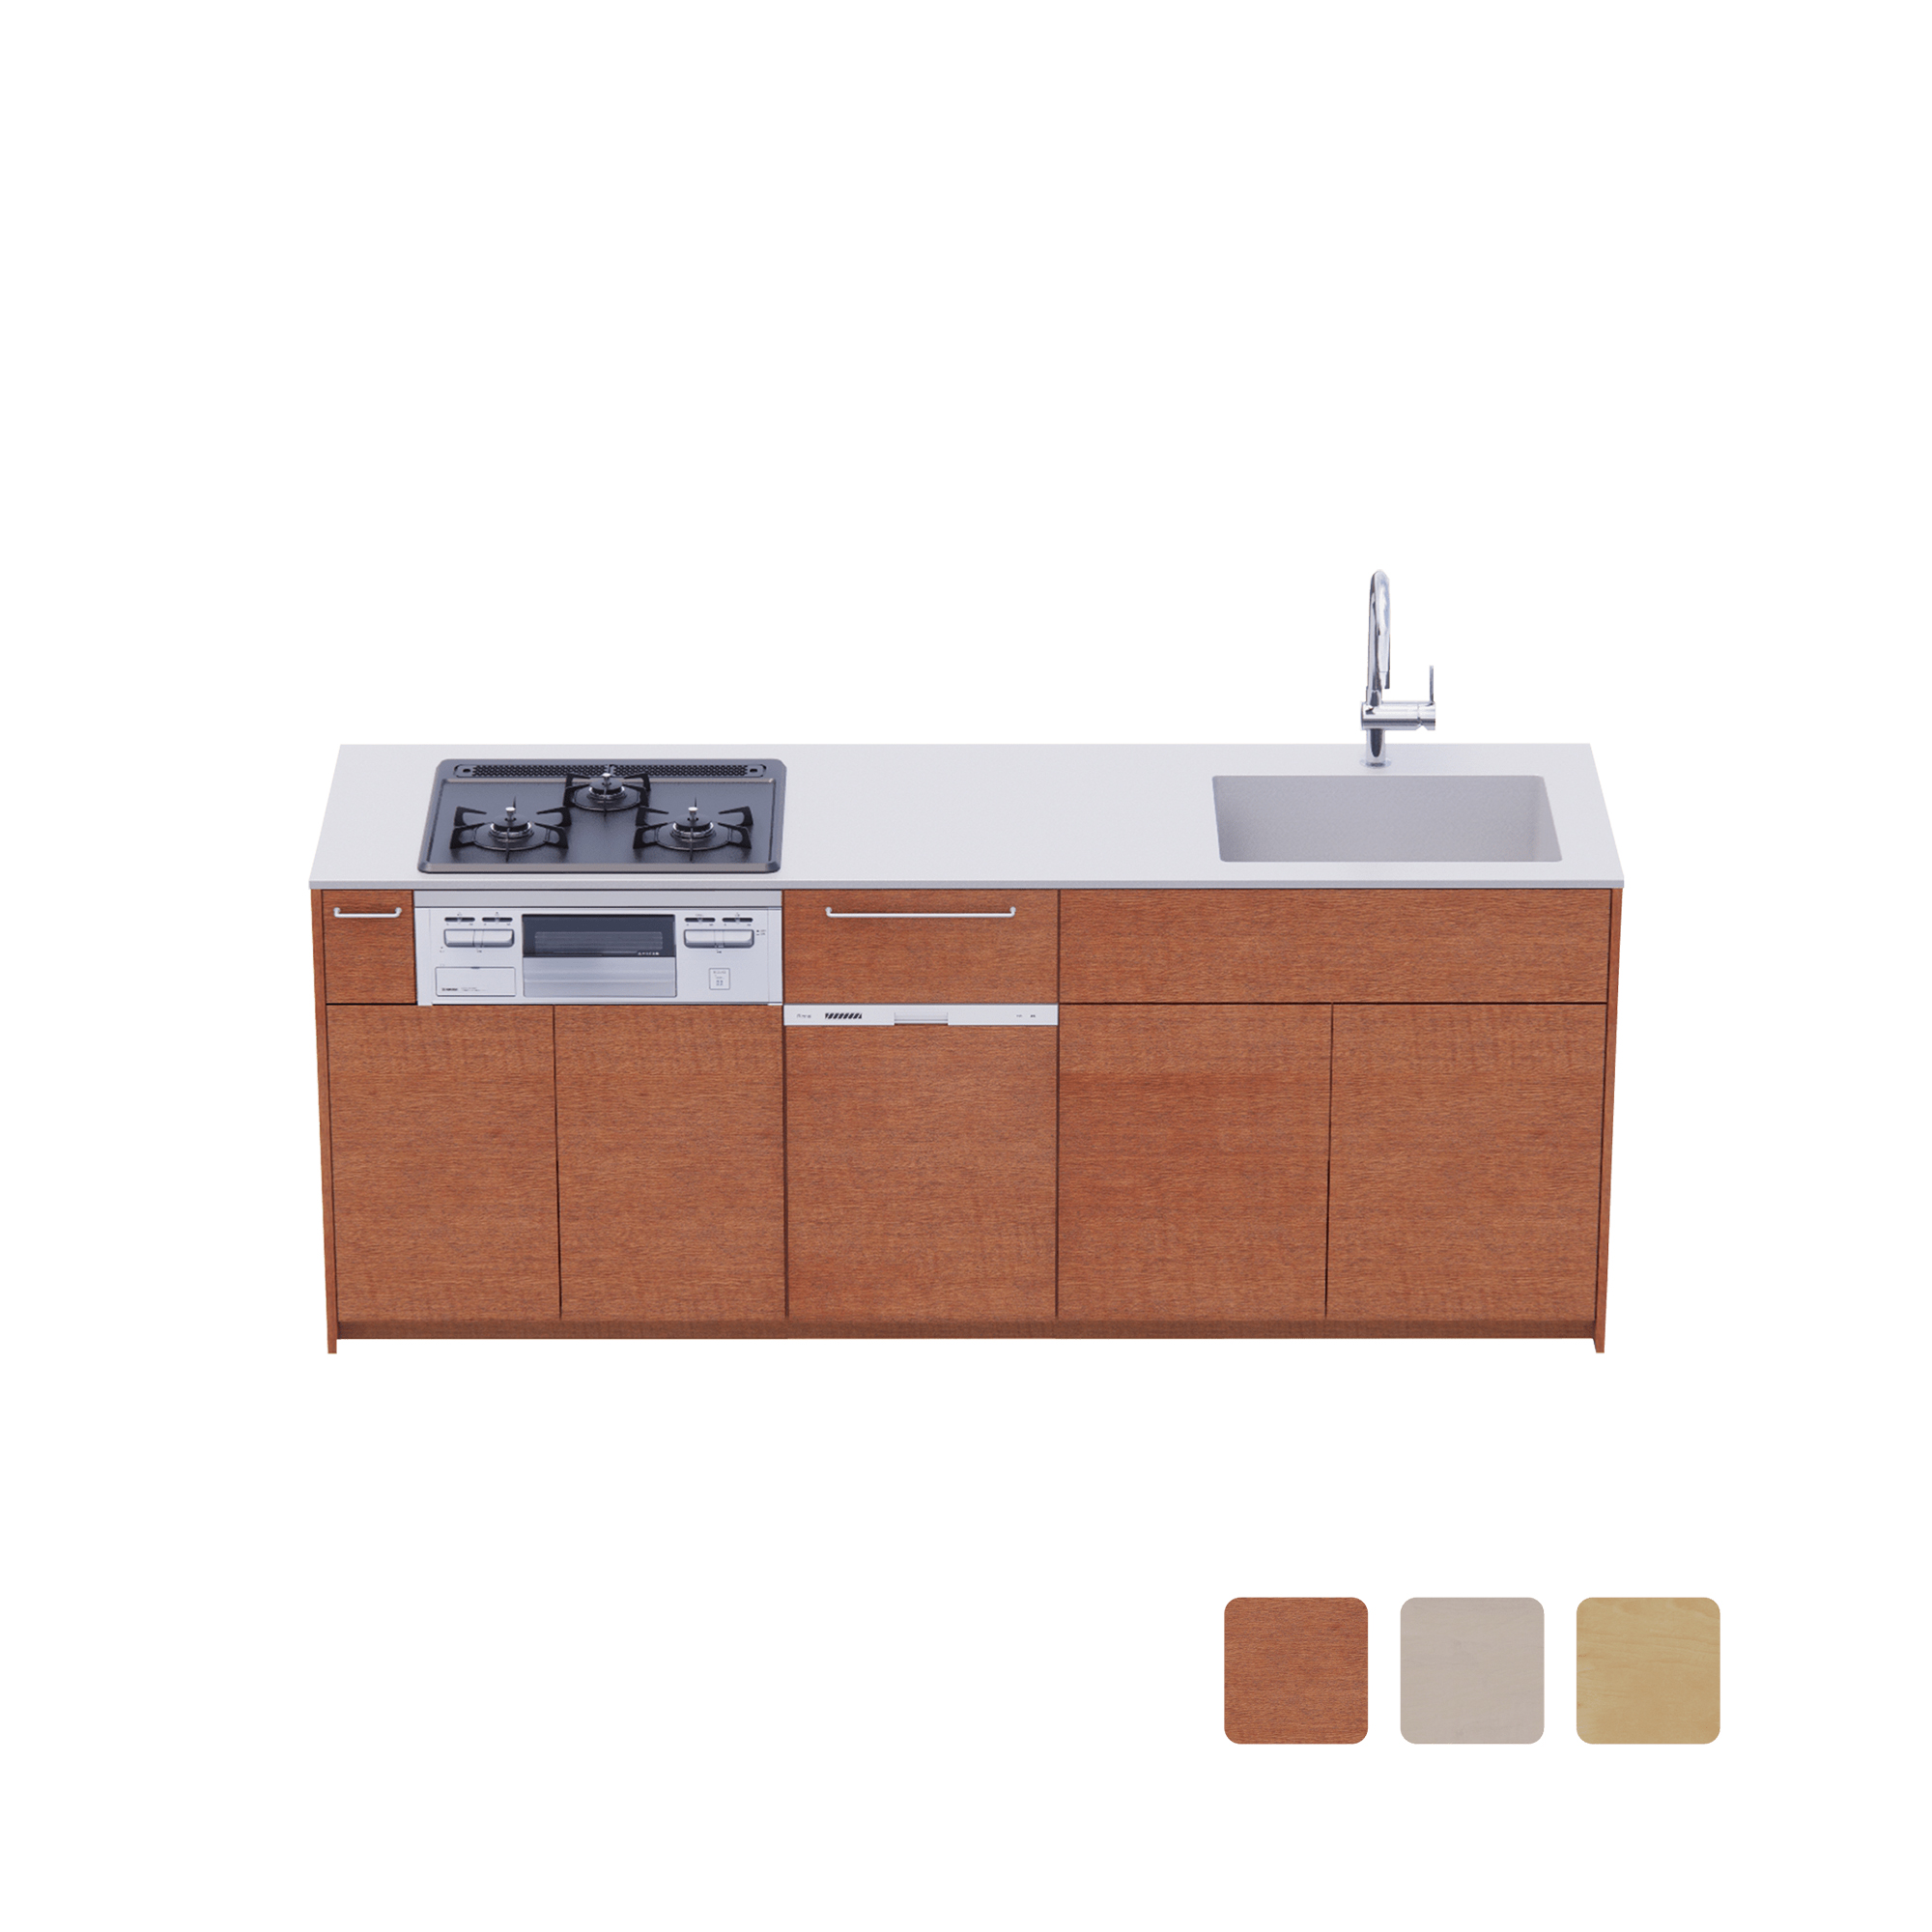 木製システムキッチン 壁付け型 W2140～2290・コンロあり / オーブンなし / 食洗機あり KB-KC022-20-G183 壁付け型 W2140　※ 別売り品の水栓・コンロ・食洗機を設置した時のイメージです